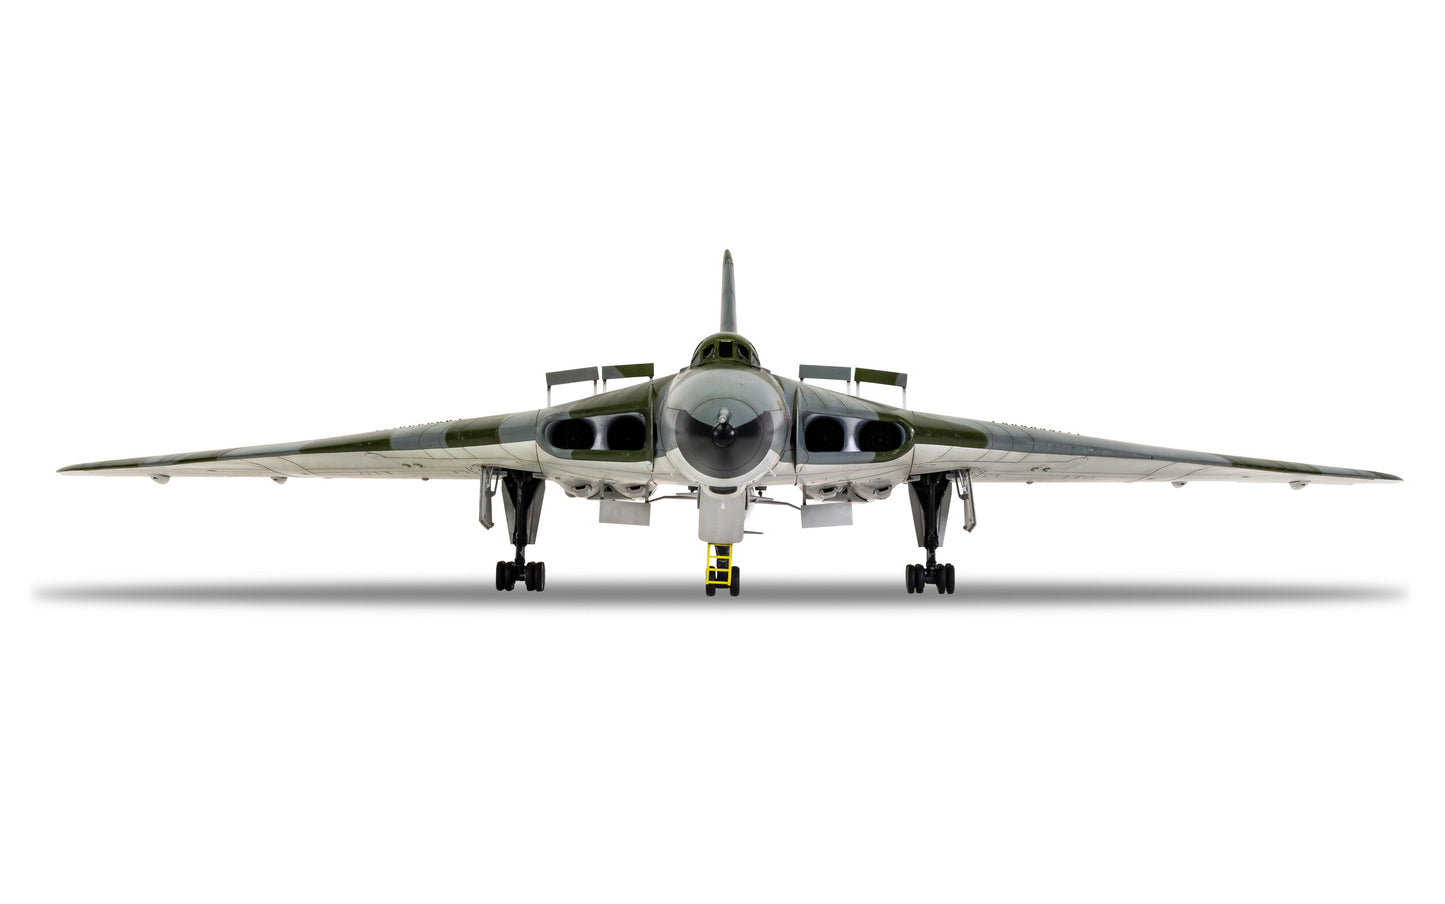 Airfix 1/72nd scale Avro Vulcan B.2